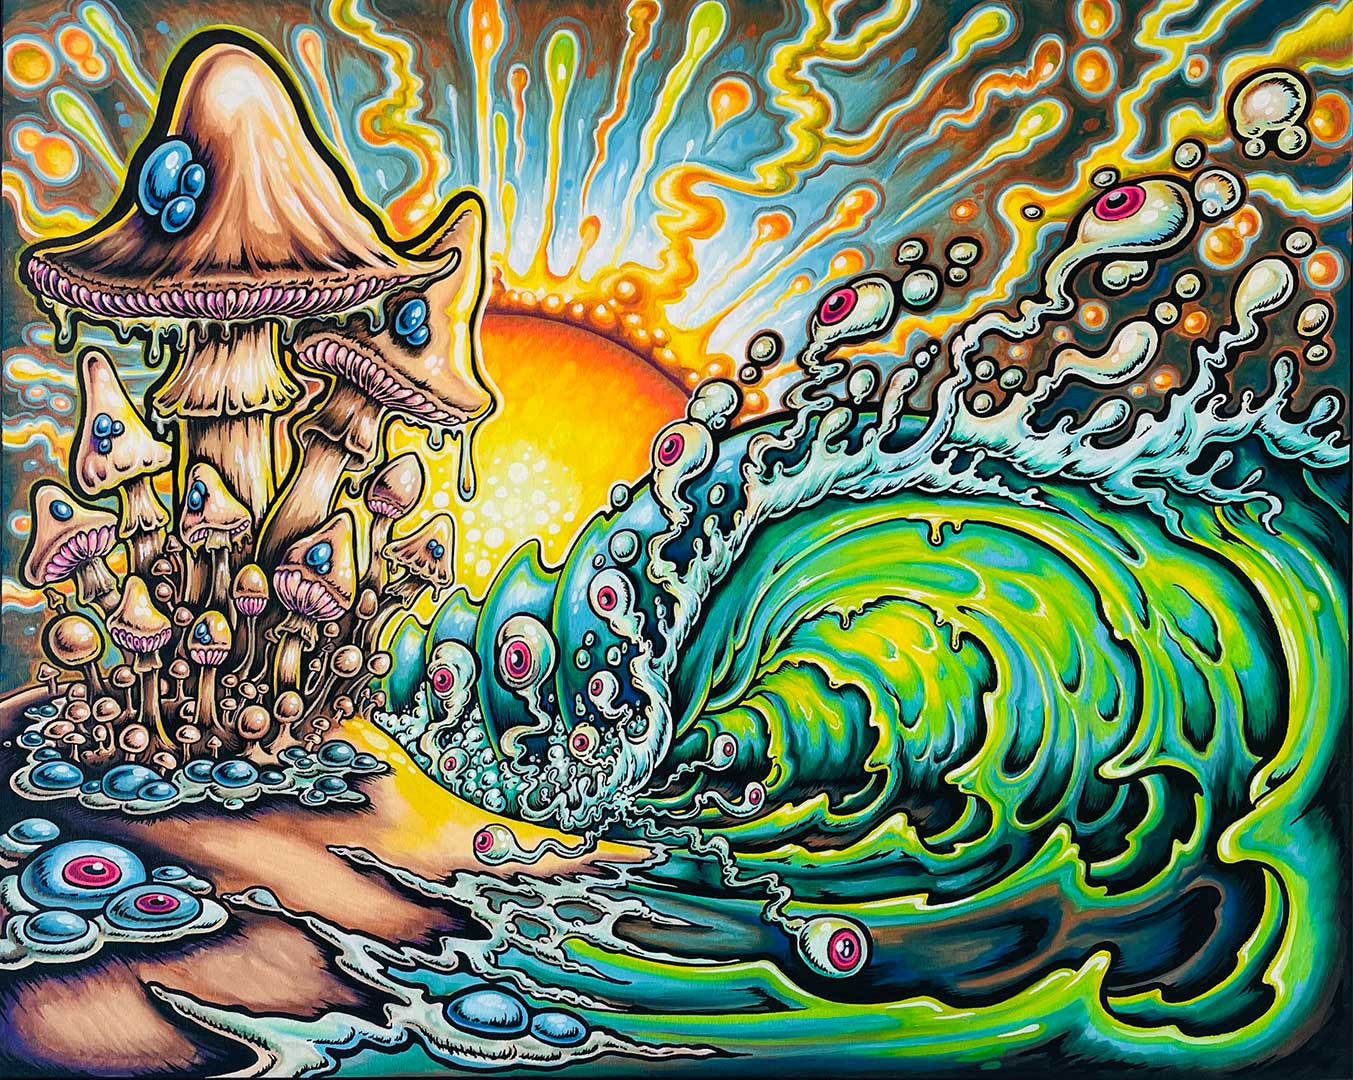 SOLD! Mushroom Tube Original Painting by Drew Brophy